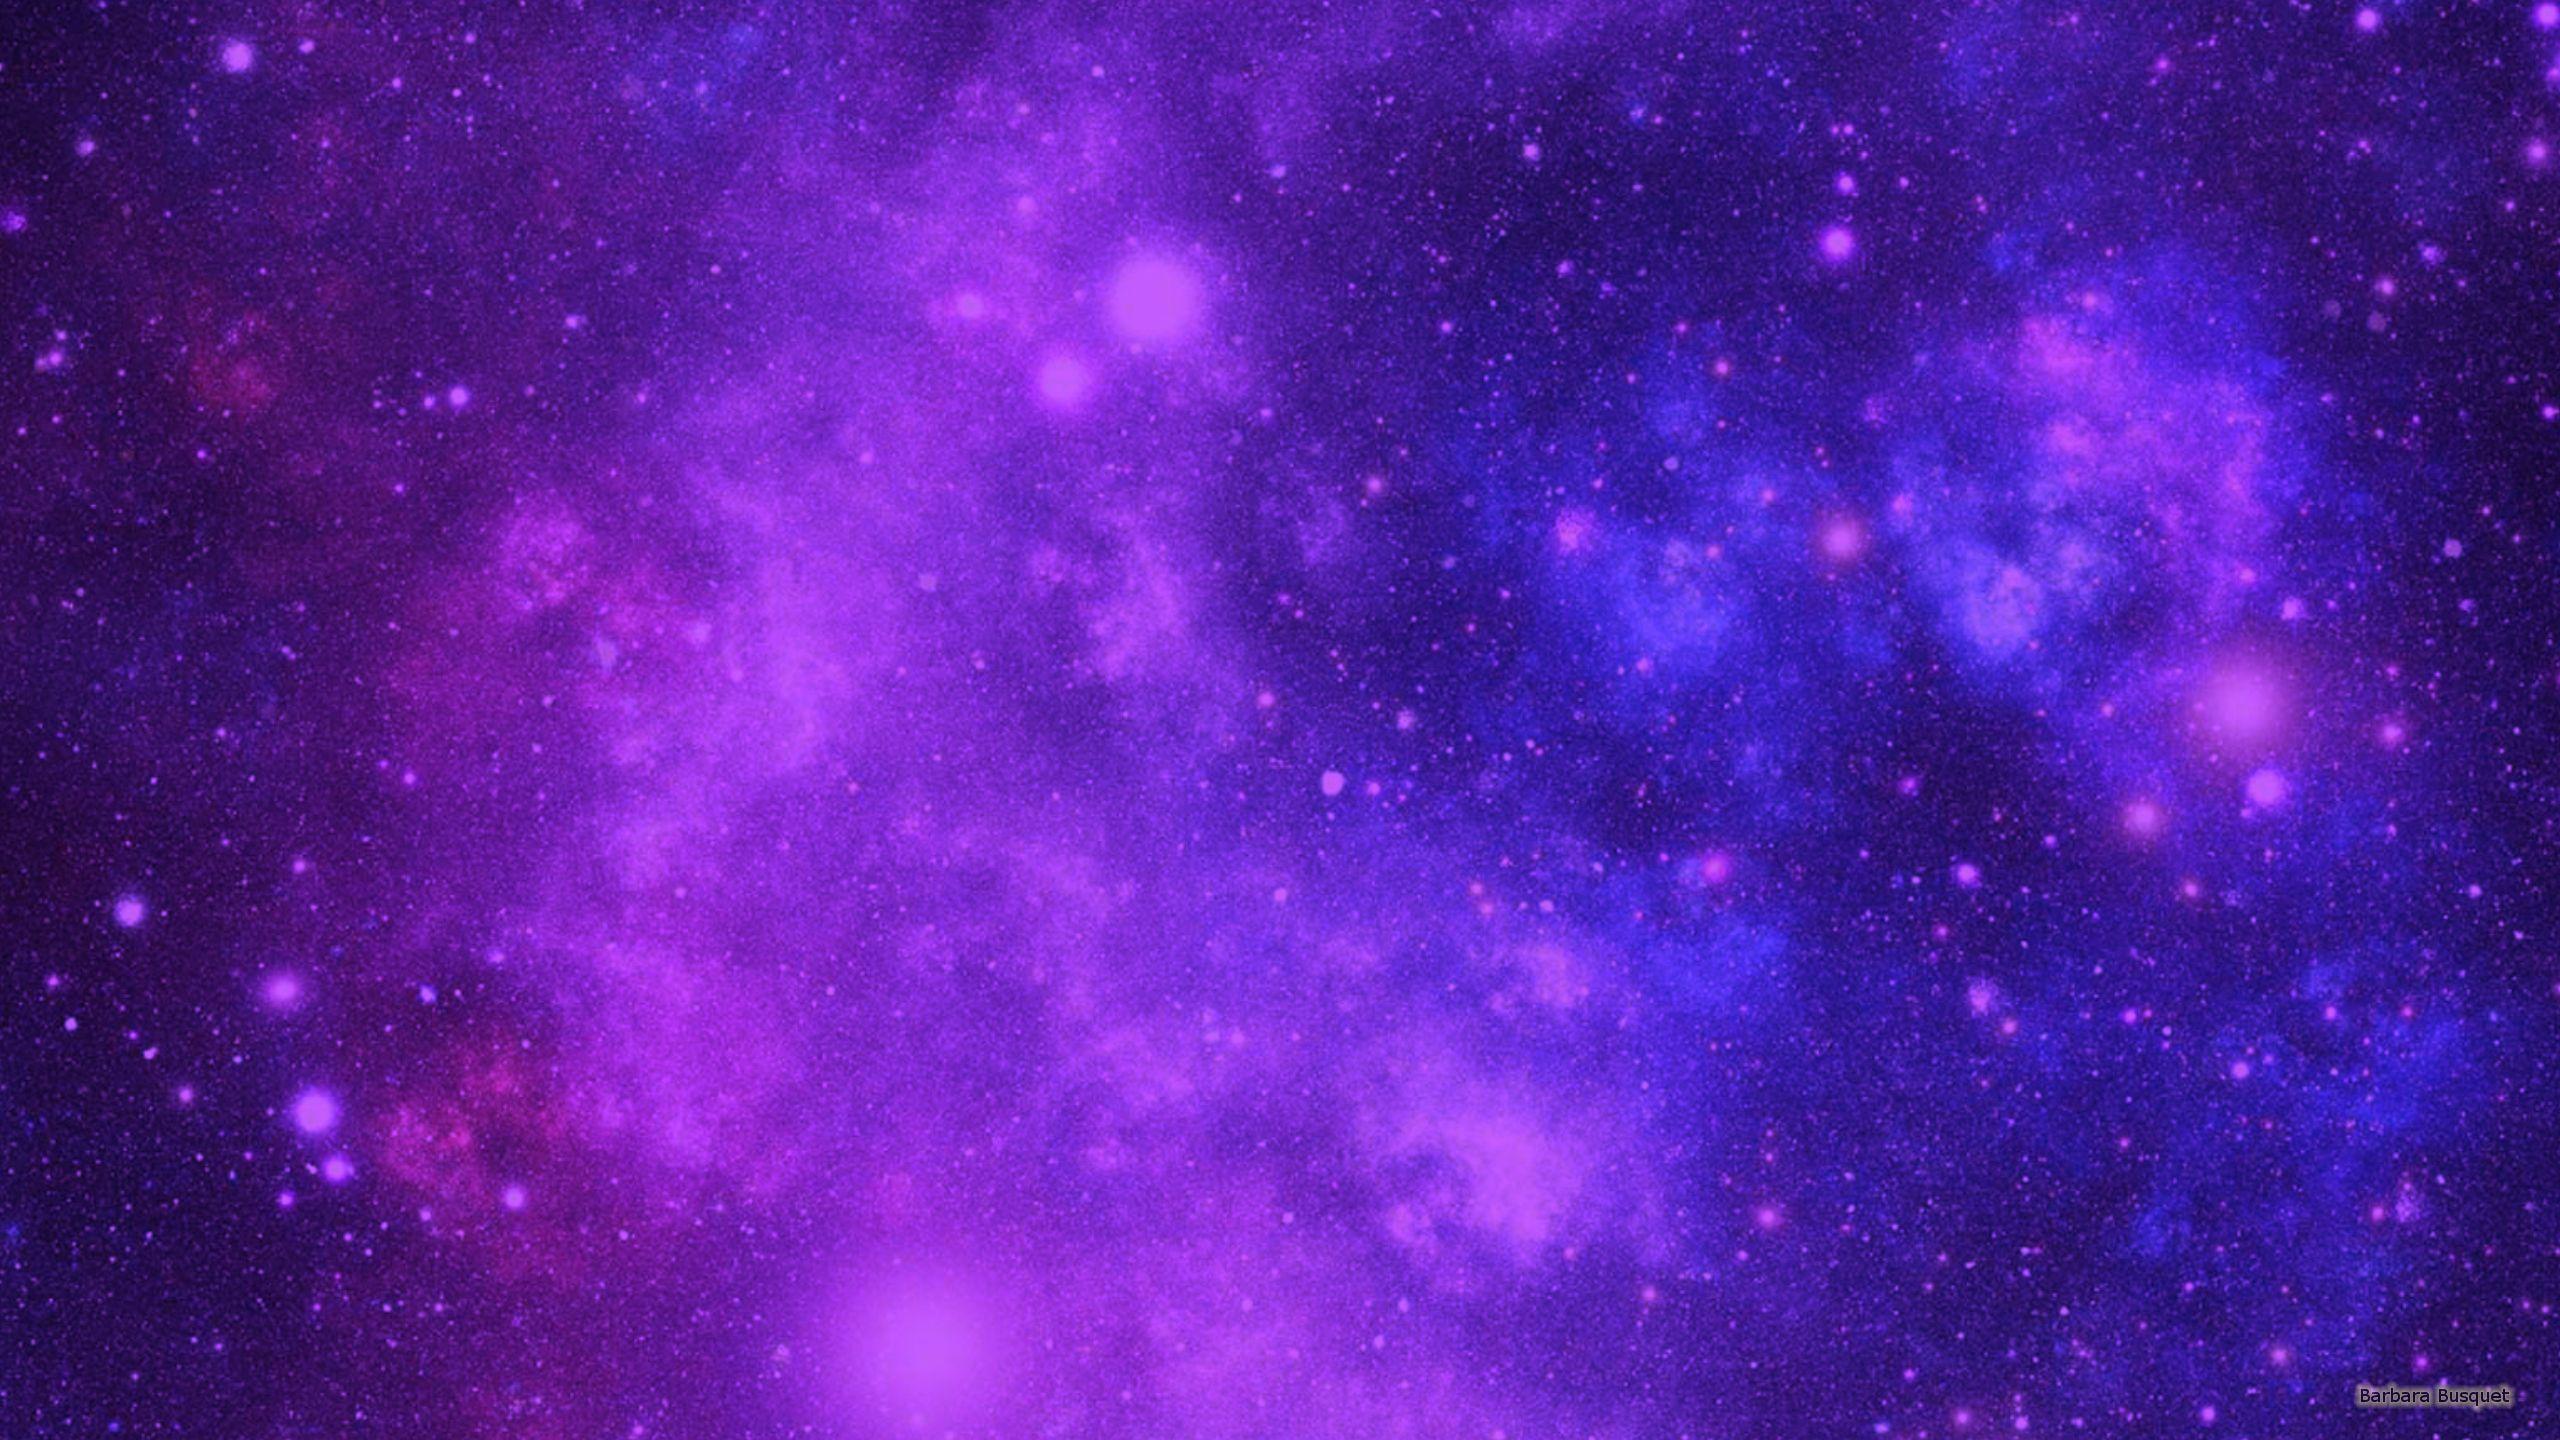 Hình nền vũ trụ màu tím thật tuyệt vời! Với những hình ảnh đầy mê hoặc của vũ trụ, những hình nền màu tím sẽ đưa bạn vào một chuyến phiêu lưu hấp dẫn đến những hành tinh xa xôi. Hãy ngắm nhìn những vì sao lấp lánh và chiêm ngưỡng vẻ đẹp của vũ trụ khi bạn sử dụng hình nền màu tím cho điện thoại hoặc máy tính của bạn.